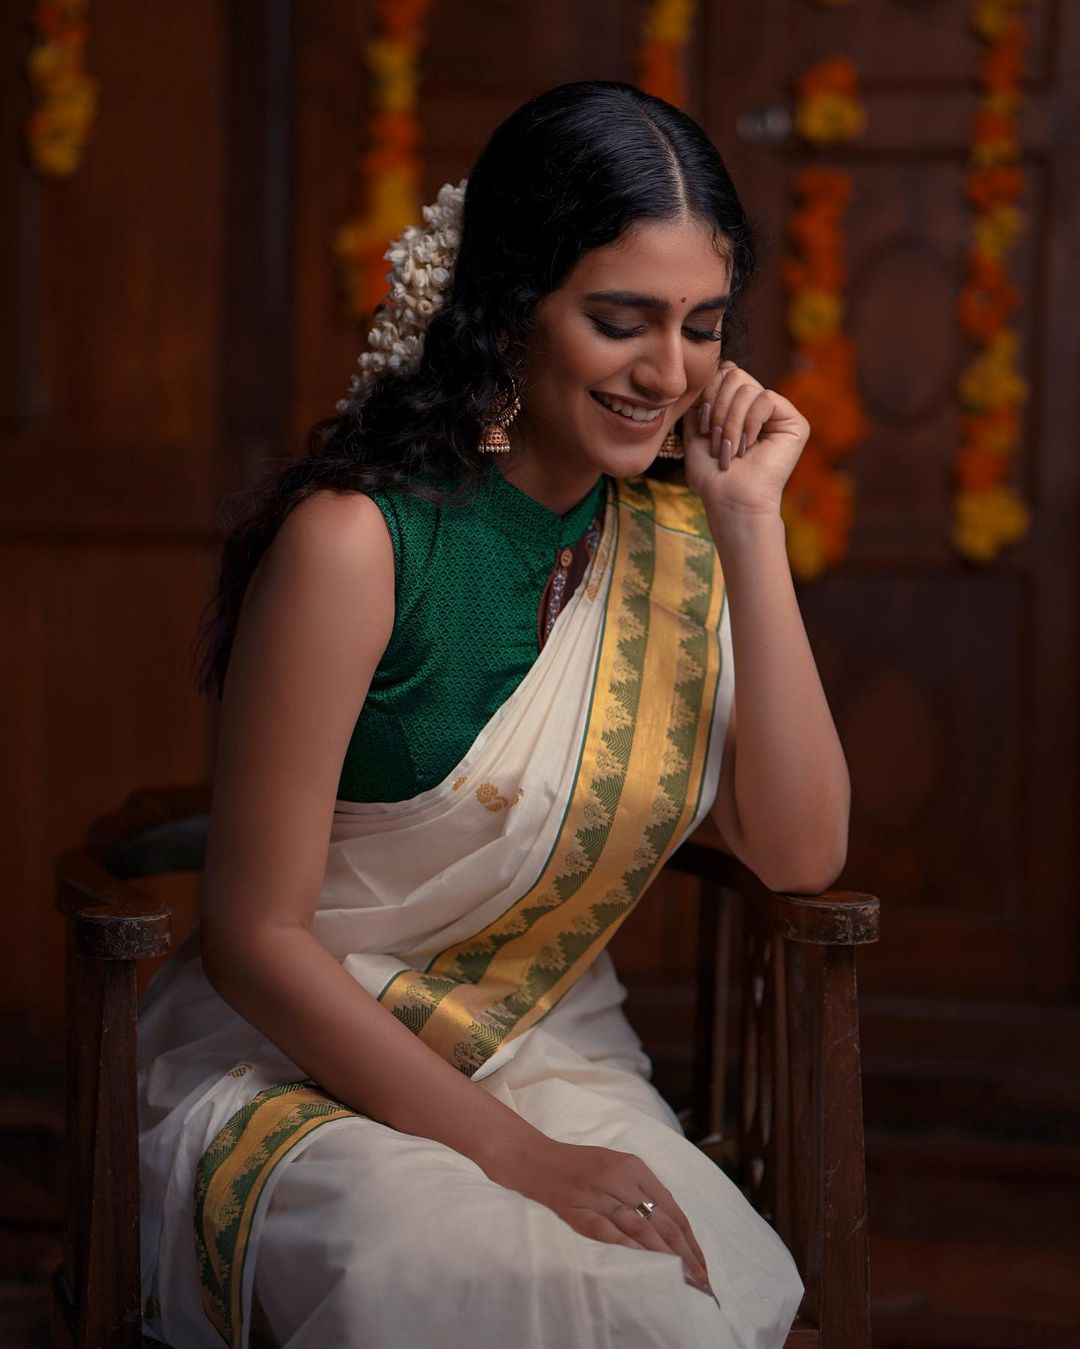  நடிகை ப்ரியா பிரகாஷ் வாரியர் ( Image :Instagram @priya.p.varrier)